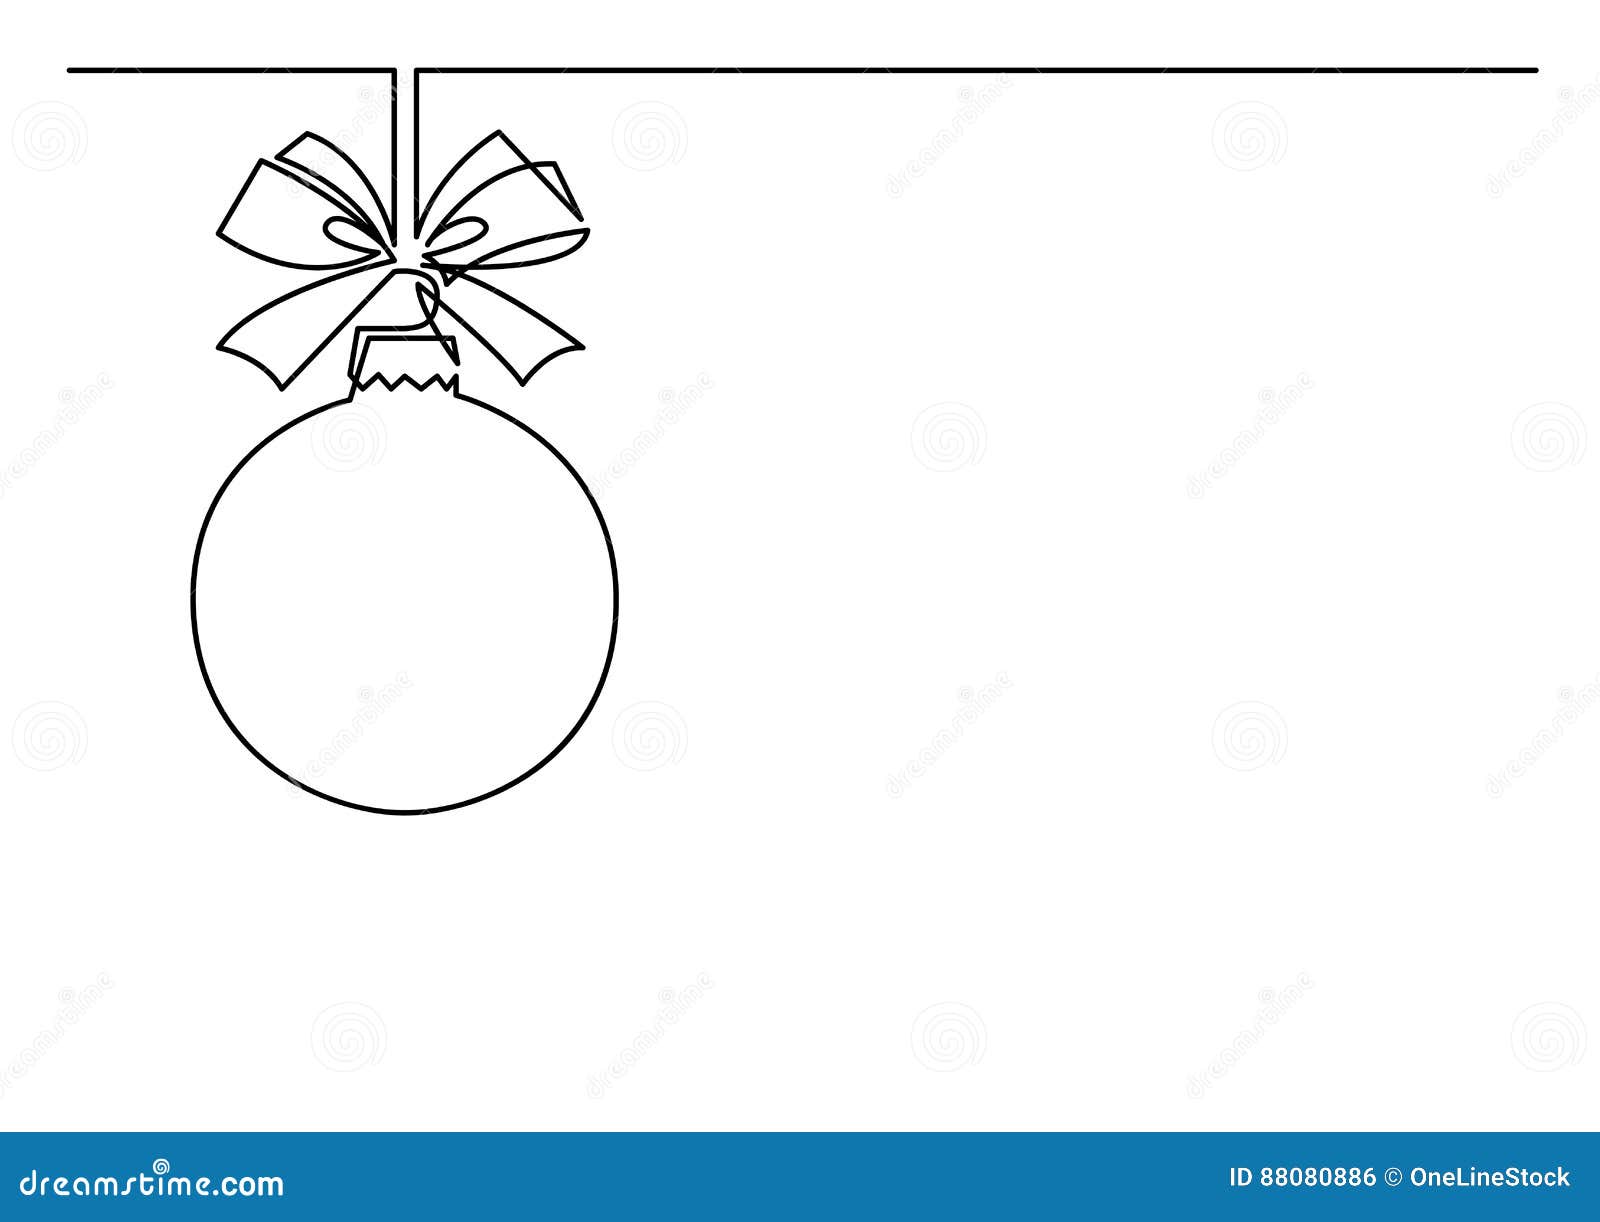 Disegno A Tratteggio Continuo Della Decorazione Dell Albero Di Natale Illustrazione Vettoriale Illustrazione Di Dicembre Stagionale 0806